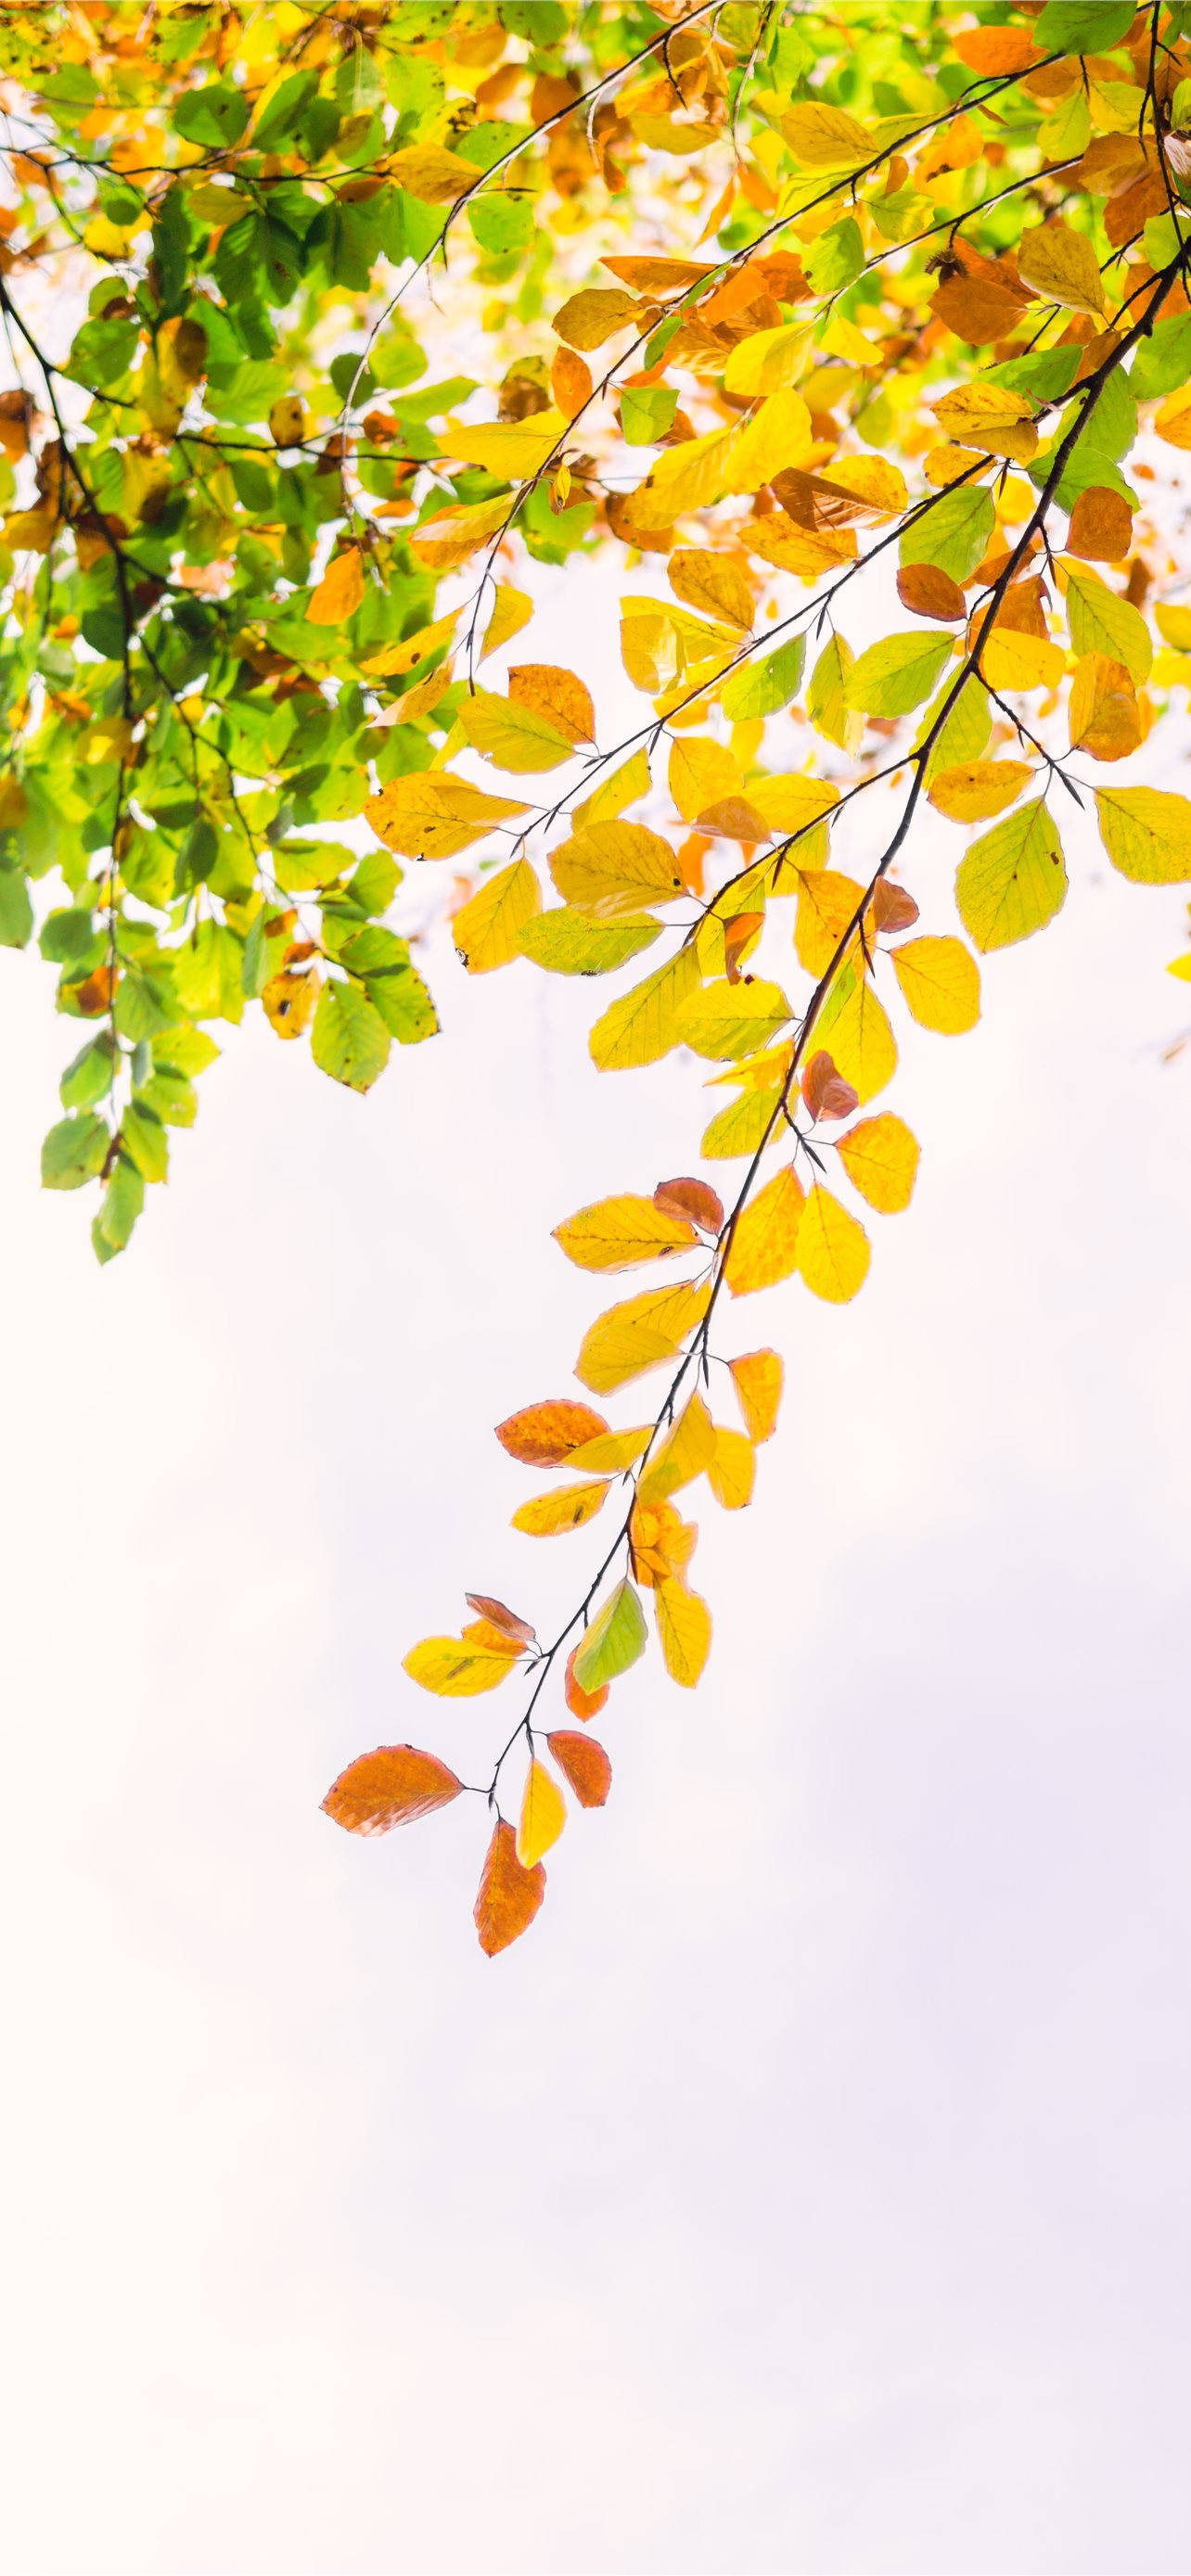 осень с желтой и зеленой листвой